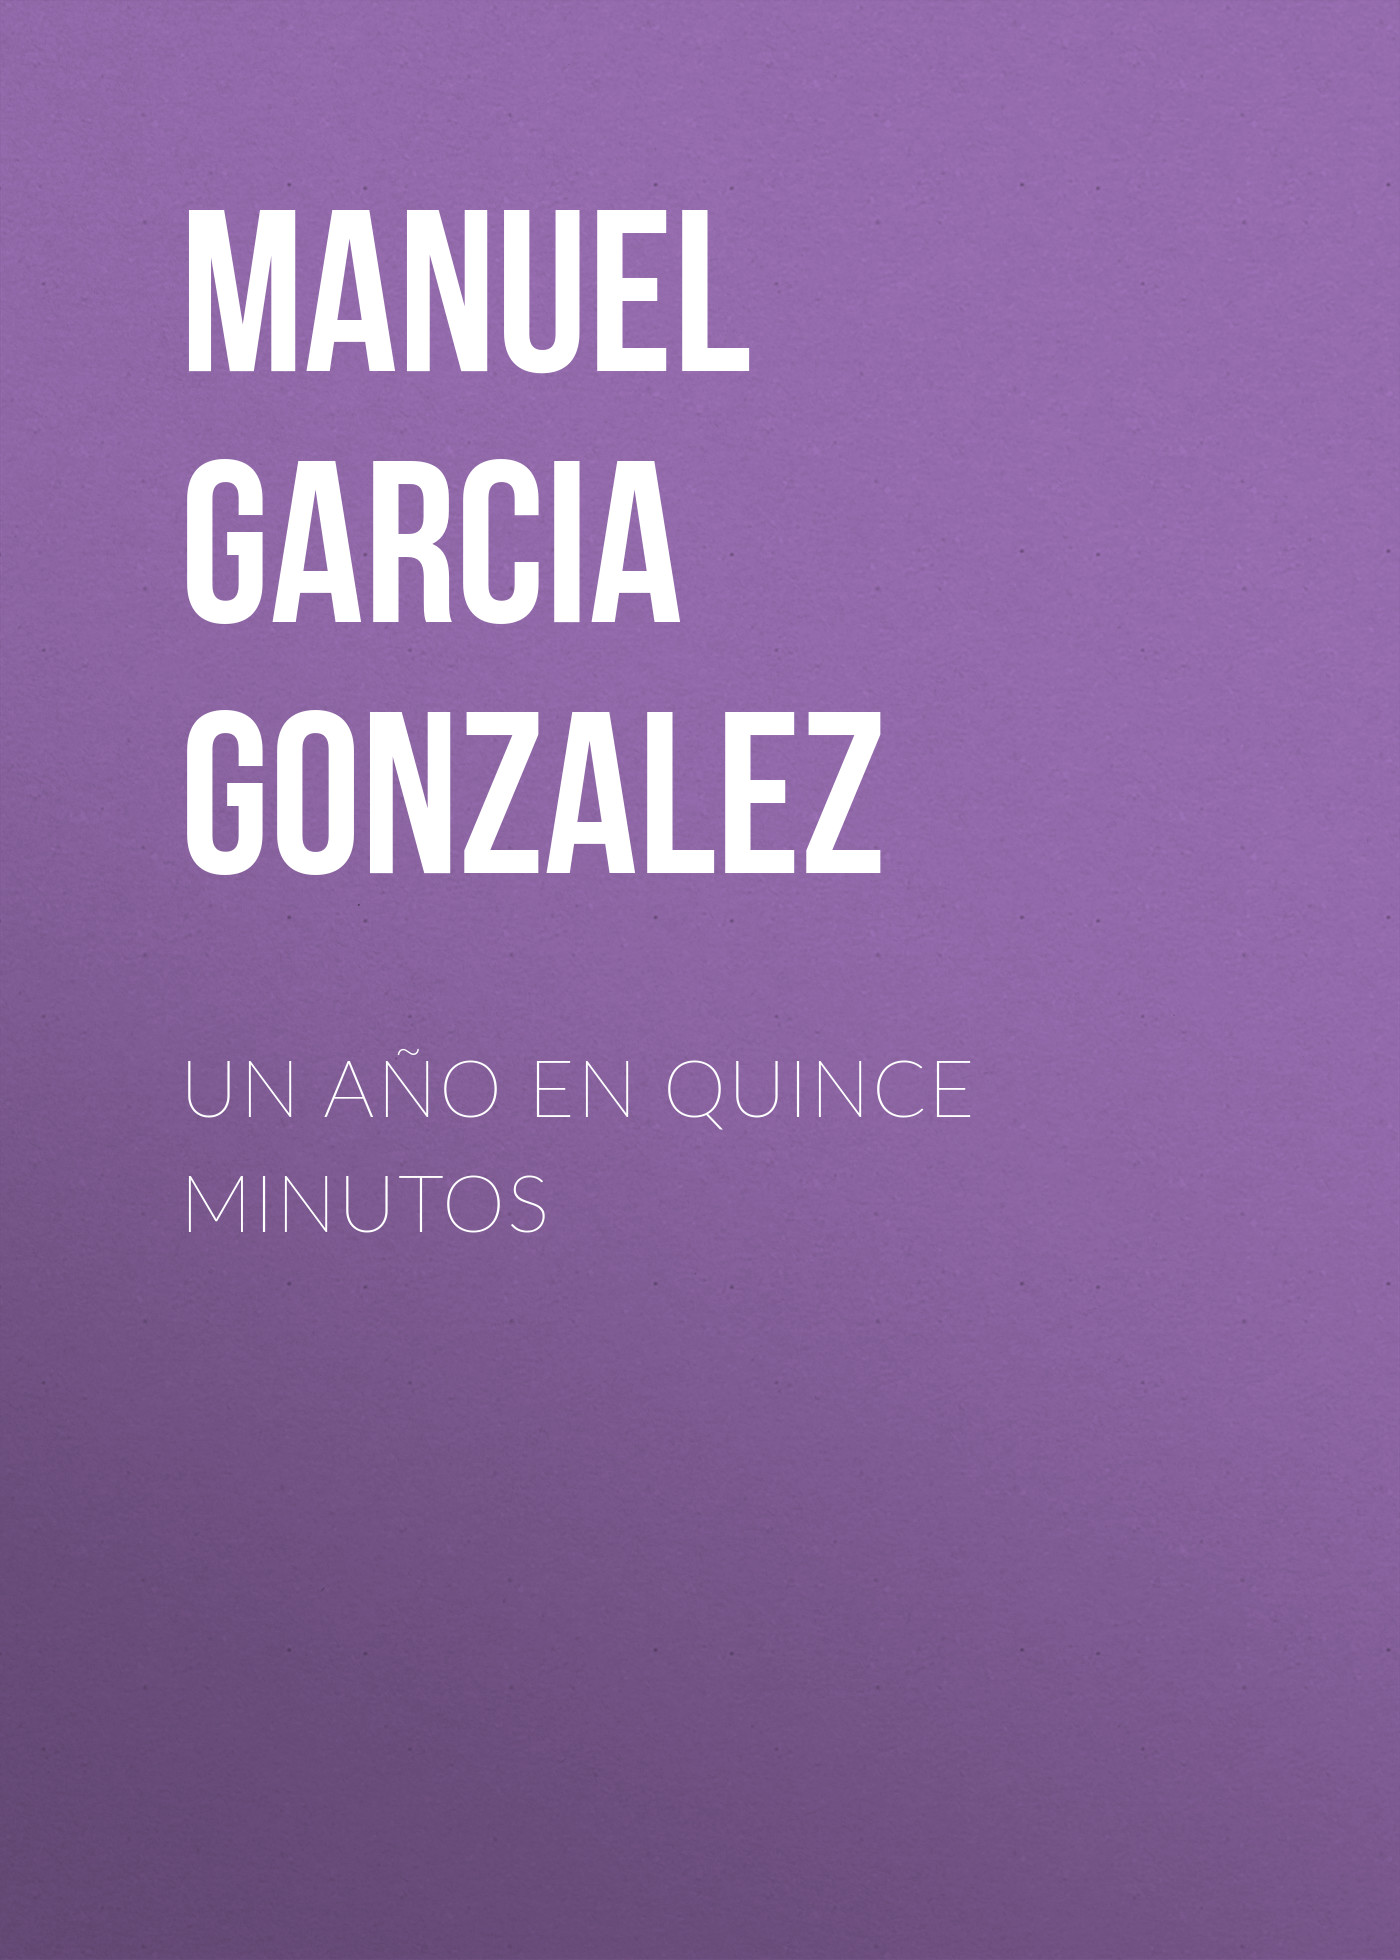 Manuel Garcia y Gonzalez Un año en quince minutos